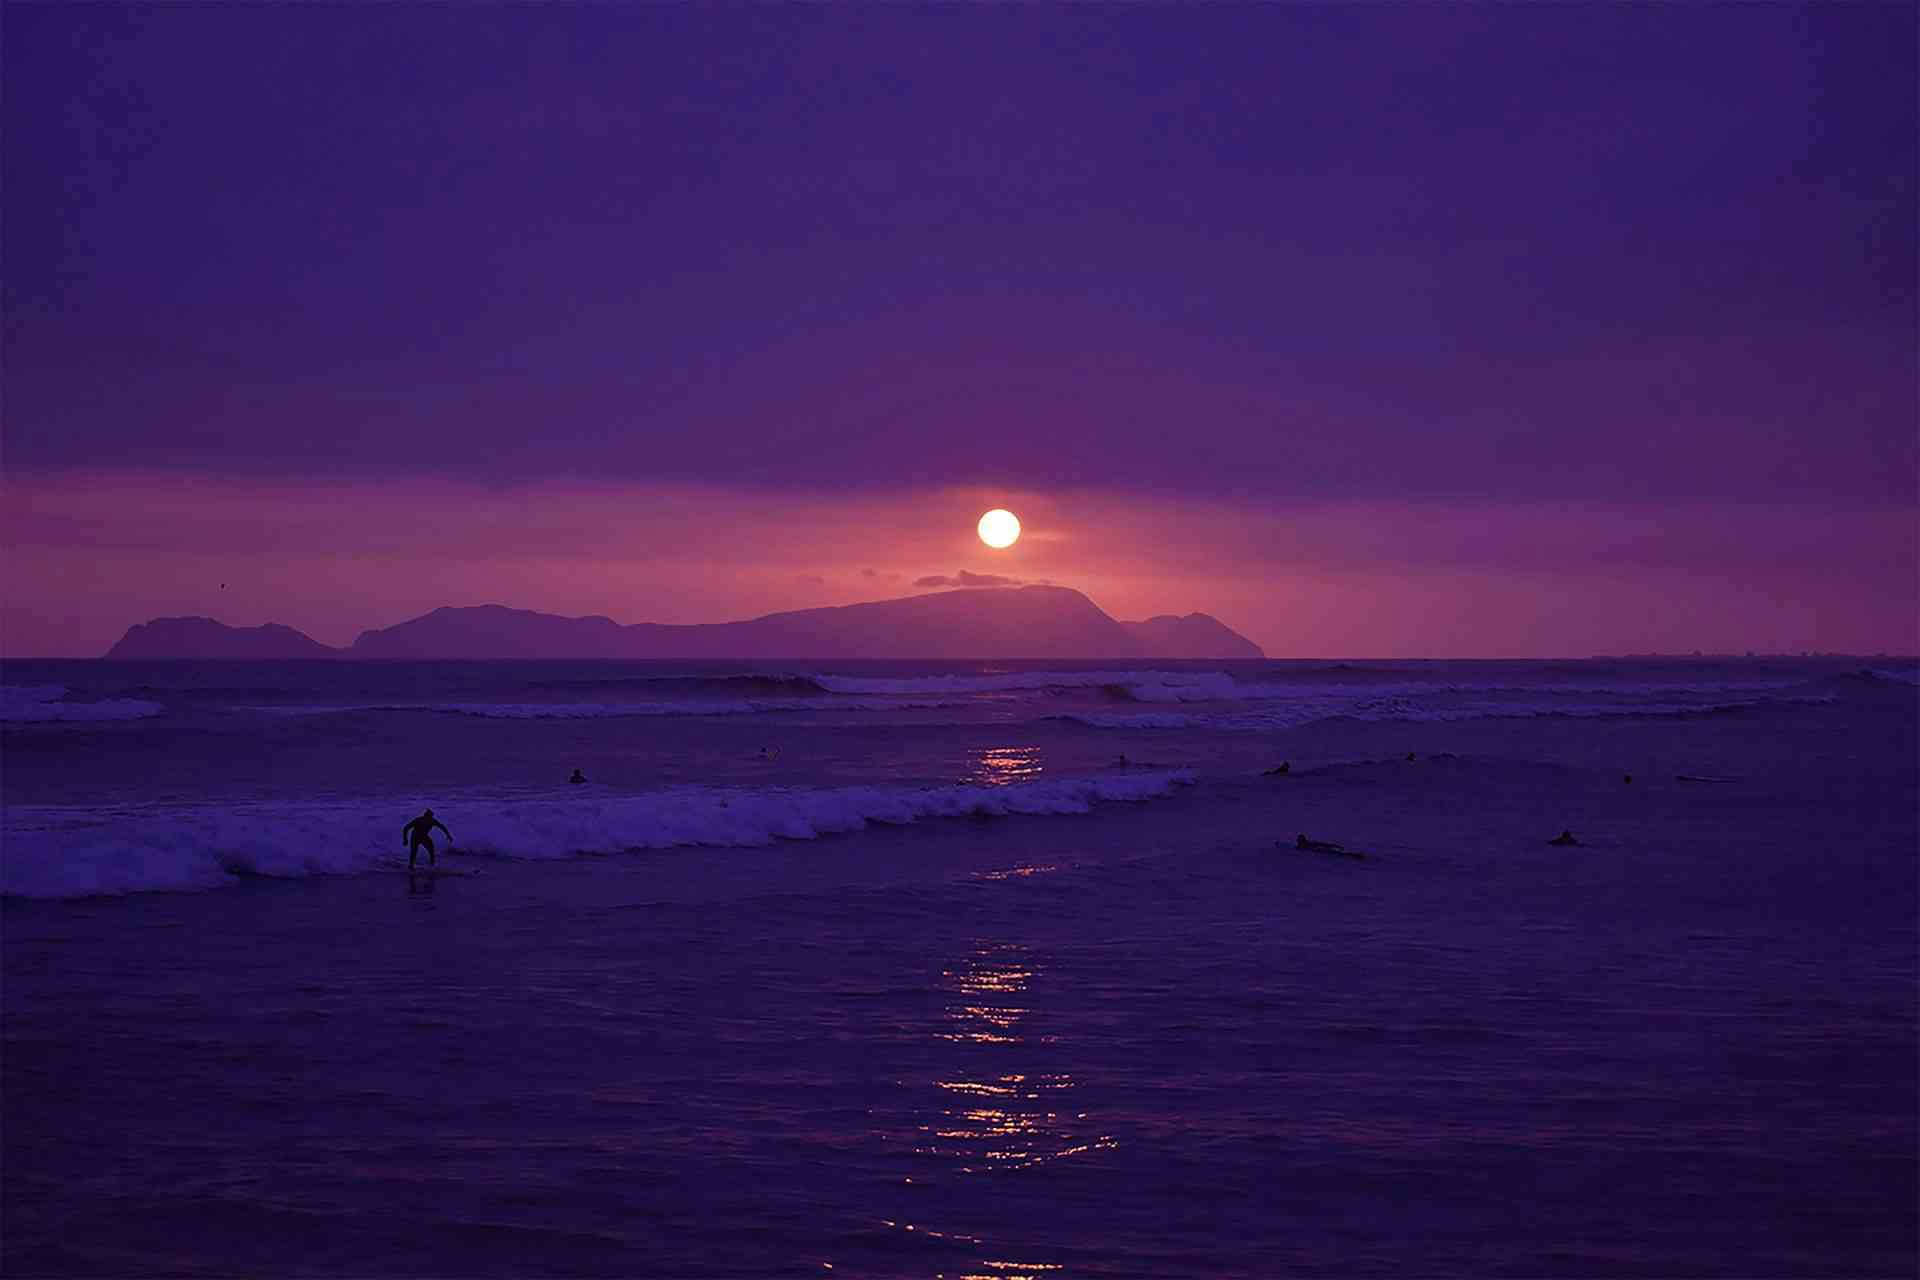 Sunset surf